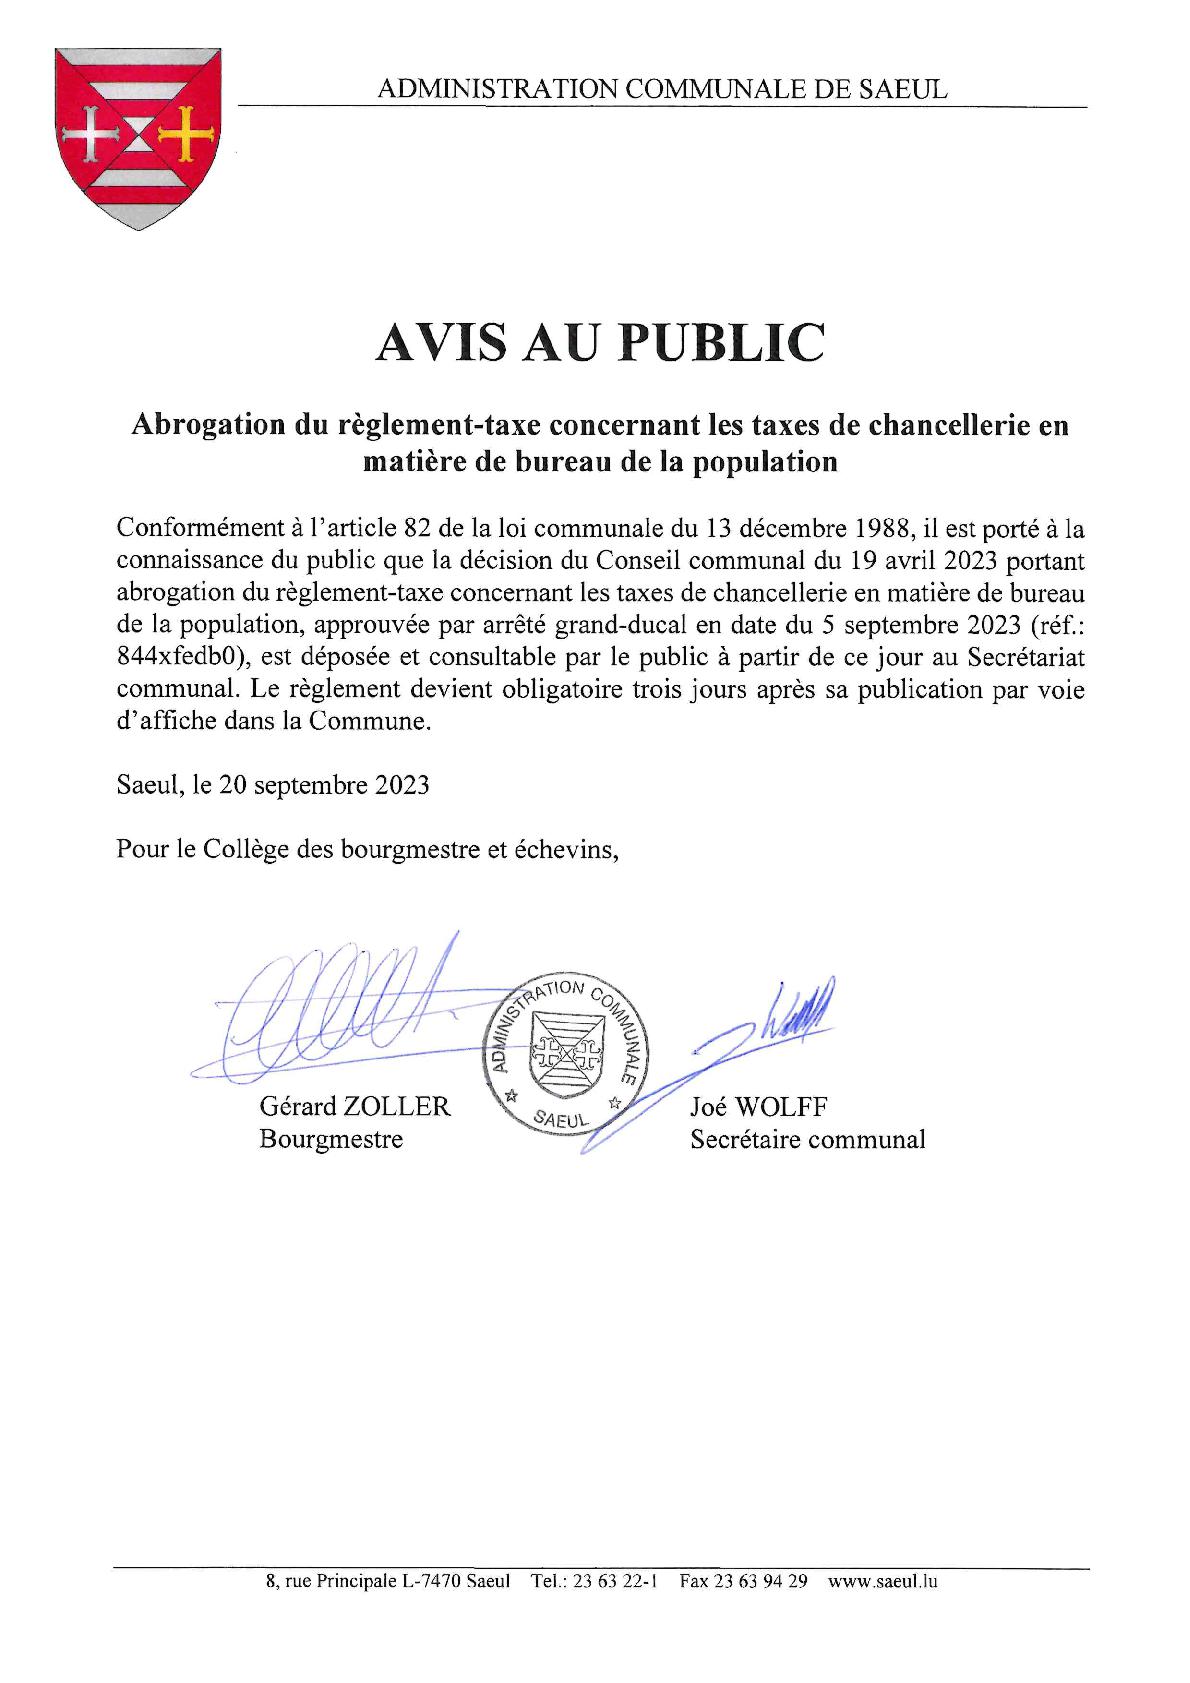 AVIS AU PUBLIC | Abrogation du règlement-taxe concernant les taxes de chancellerie en matière de bureau de la population